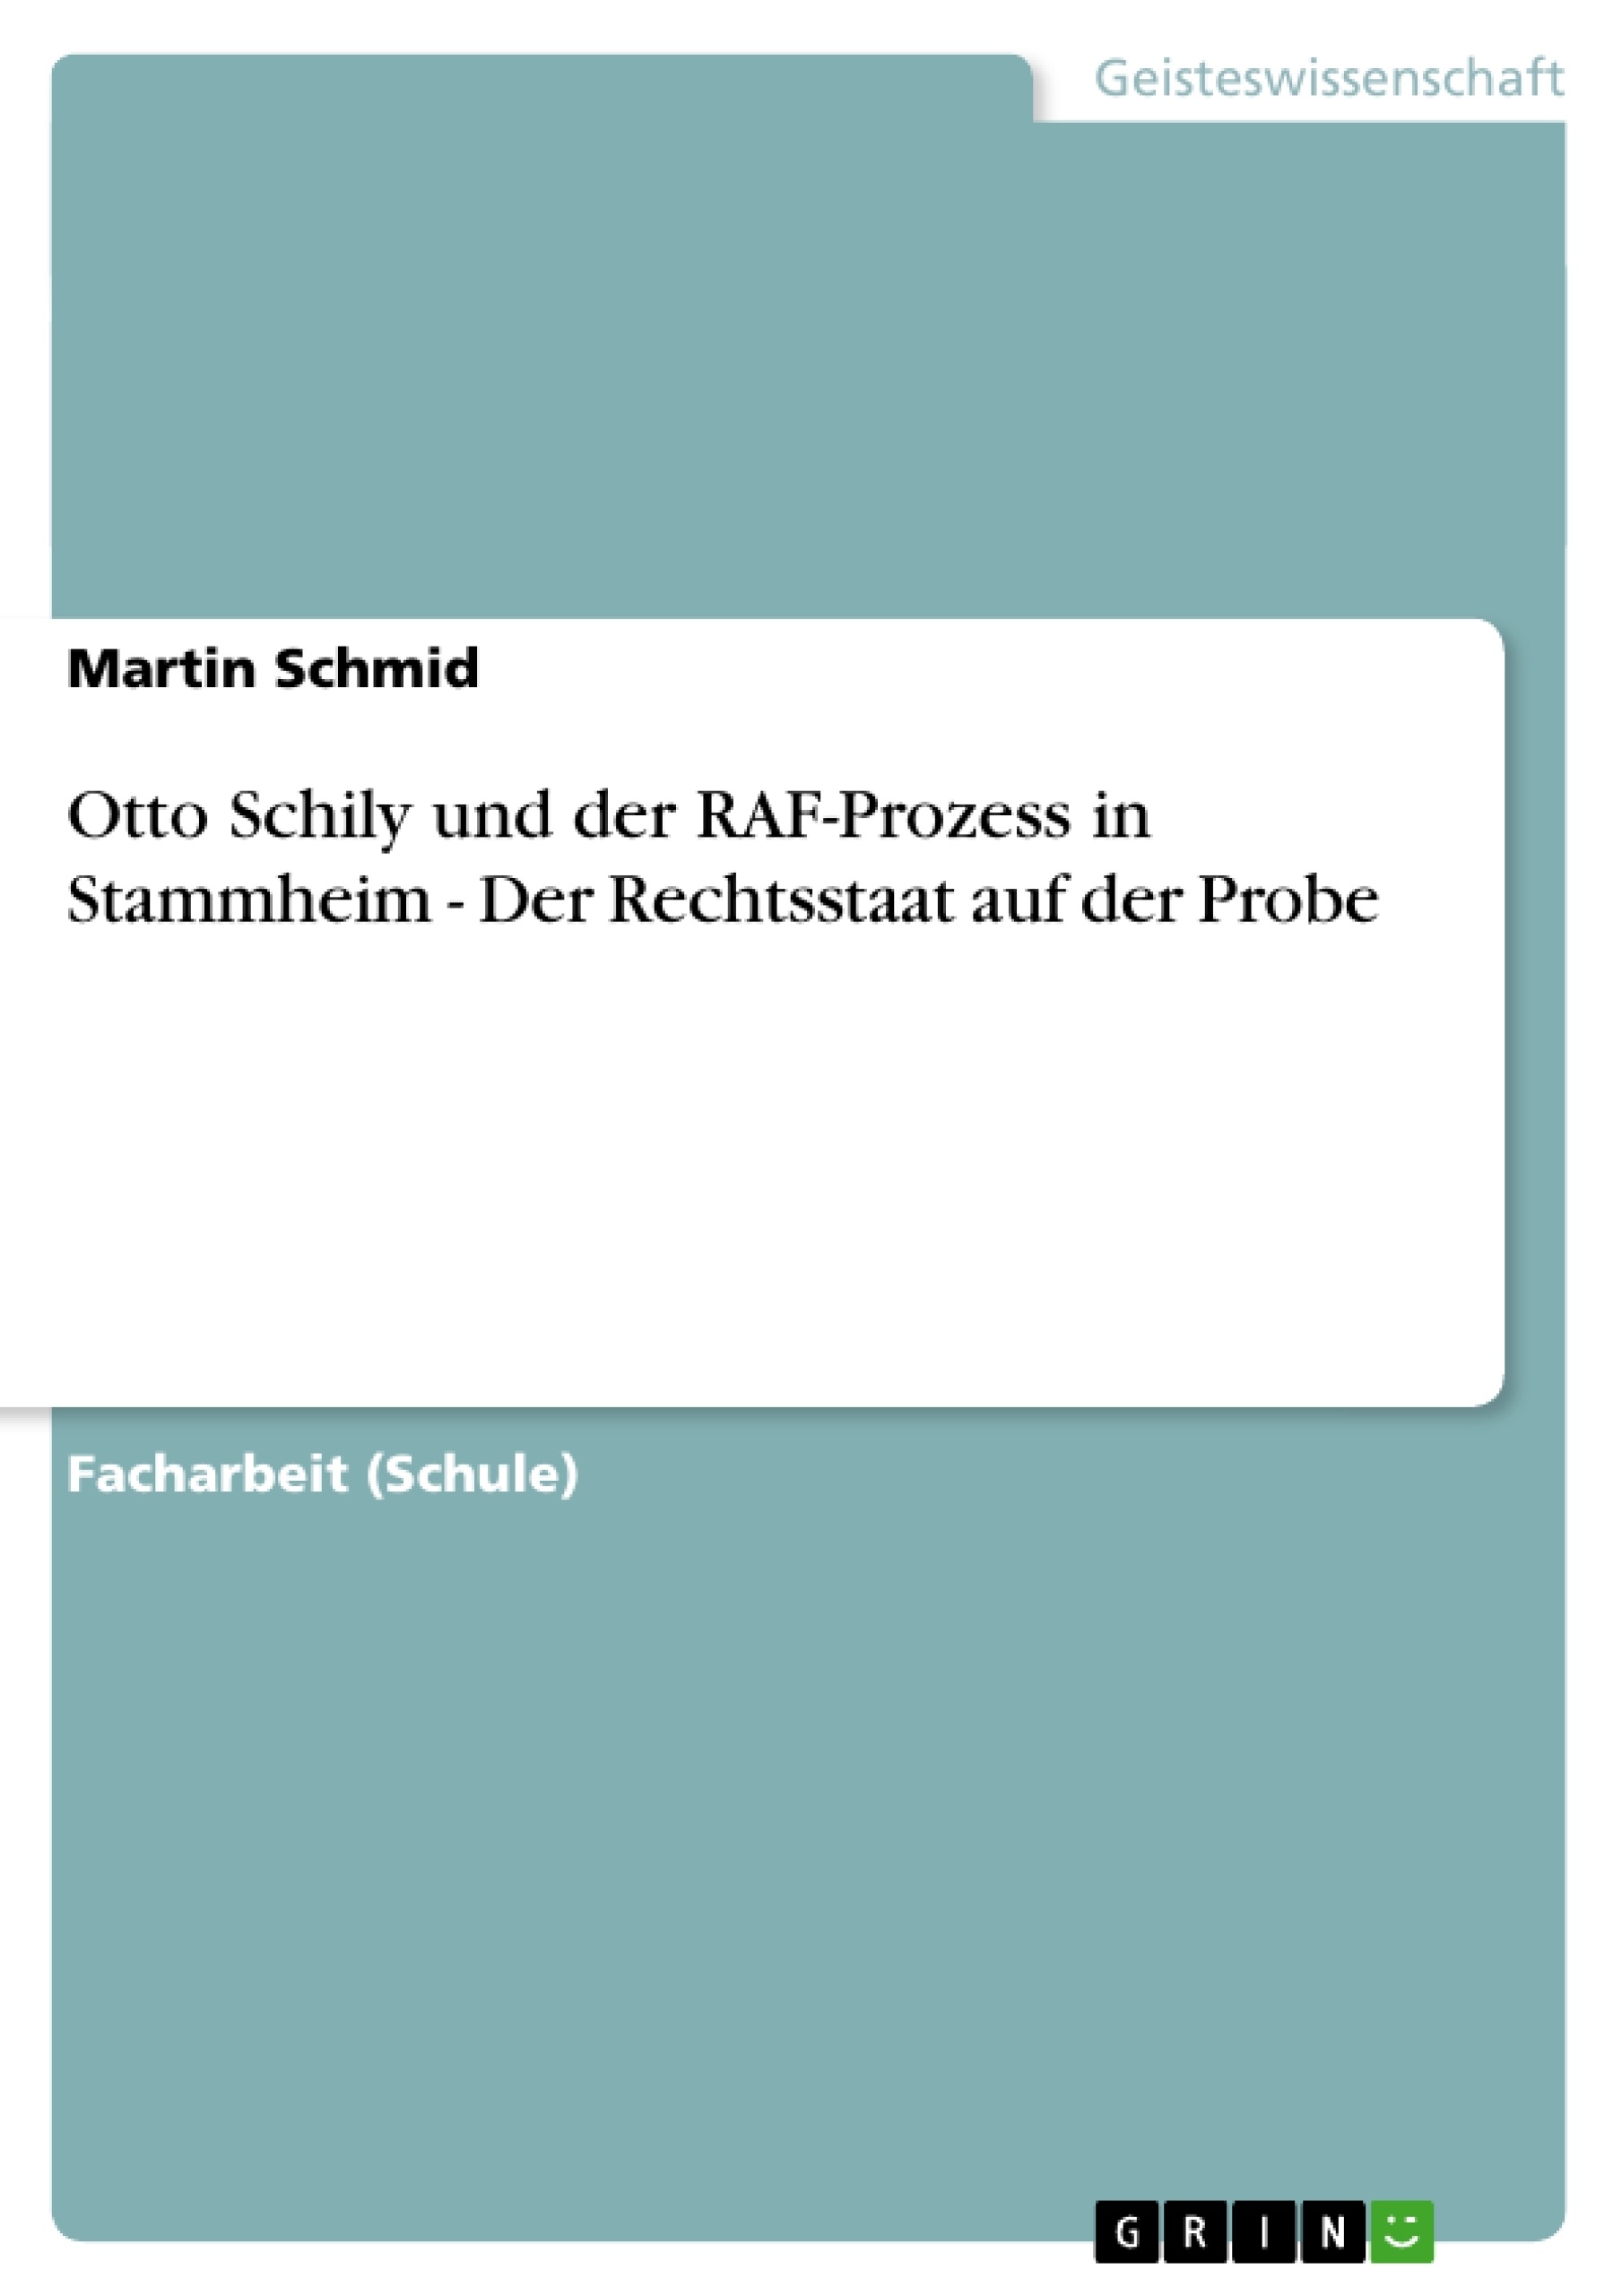 Título: Otto Schily und der RAF-Prozess in Stammheim - Der Rechtsstaat auf der Probe